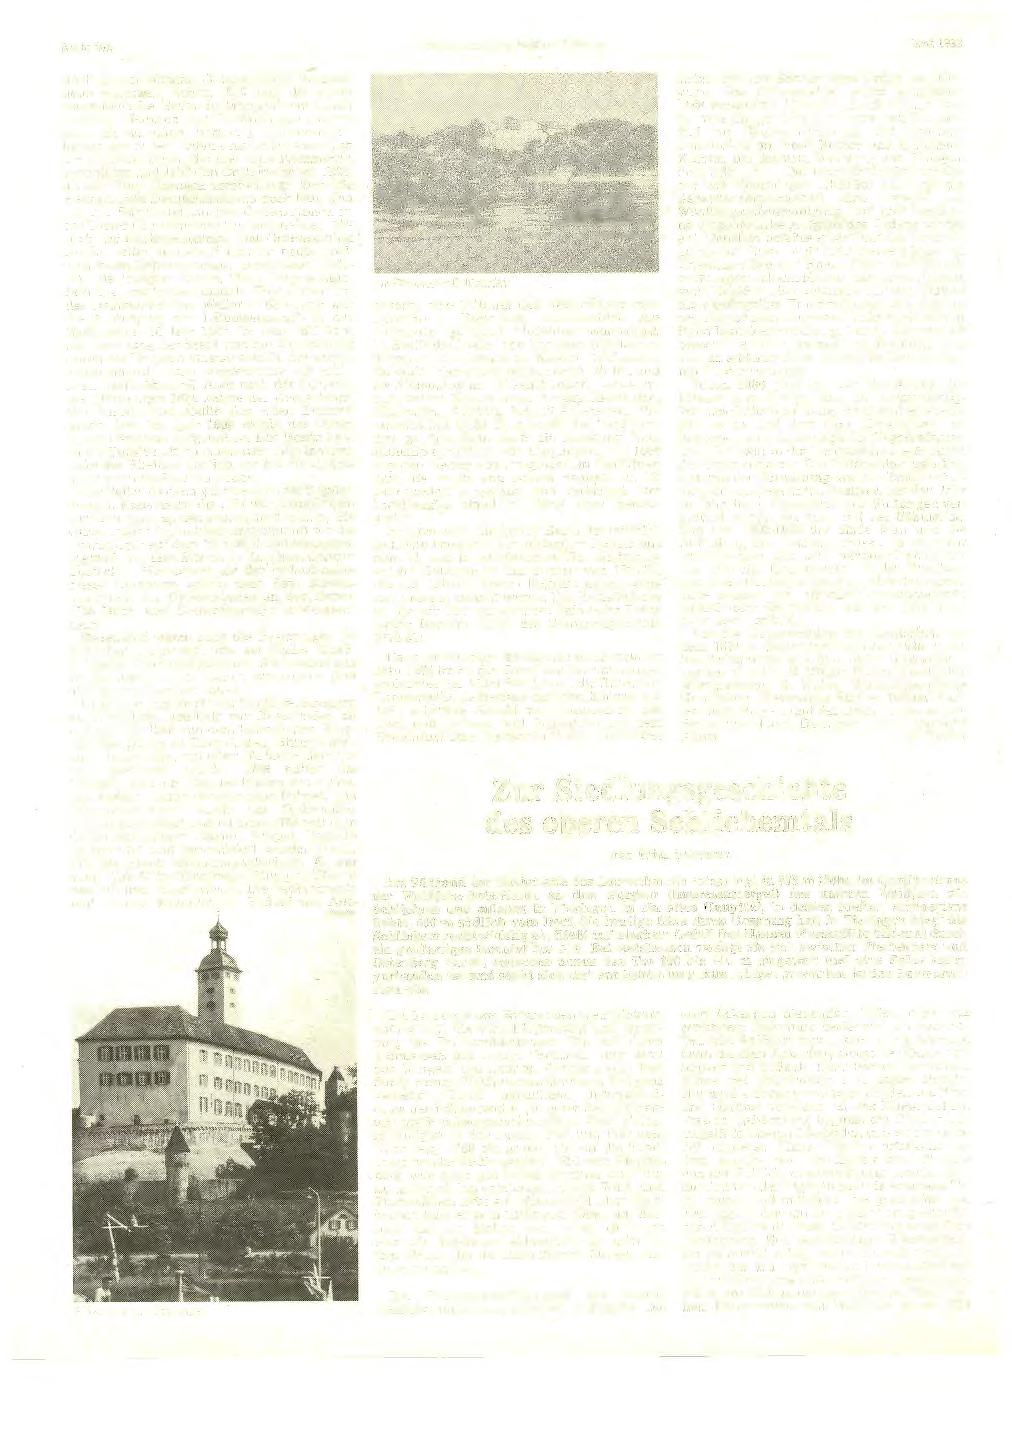 Seite 402 Heimatkundliehe Blätter Balingen Mai 1983 noch gut erhaltenen Ordensschloß Mergentheim erkennen.